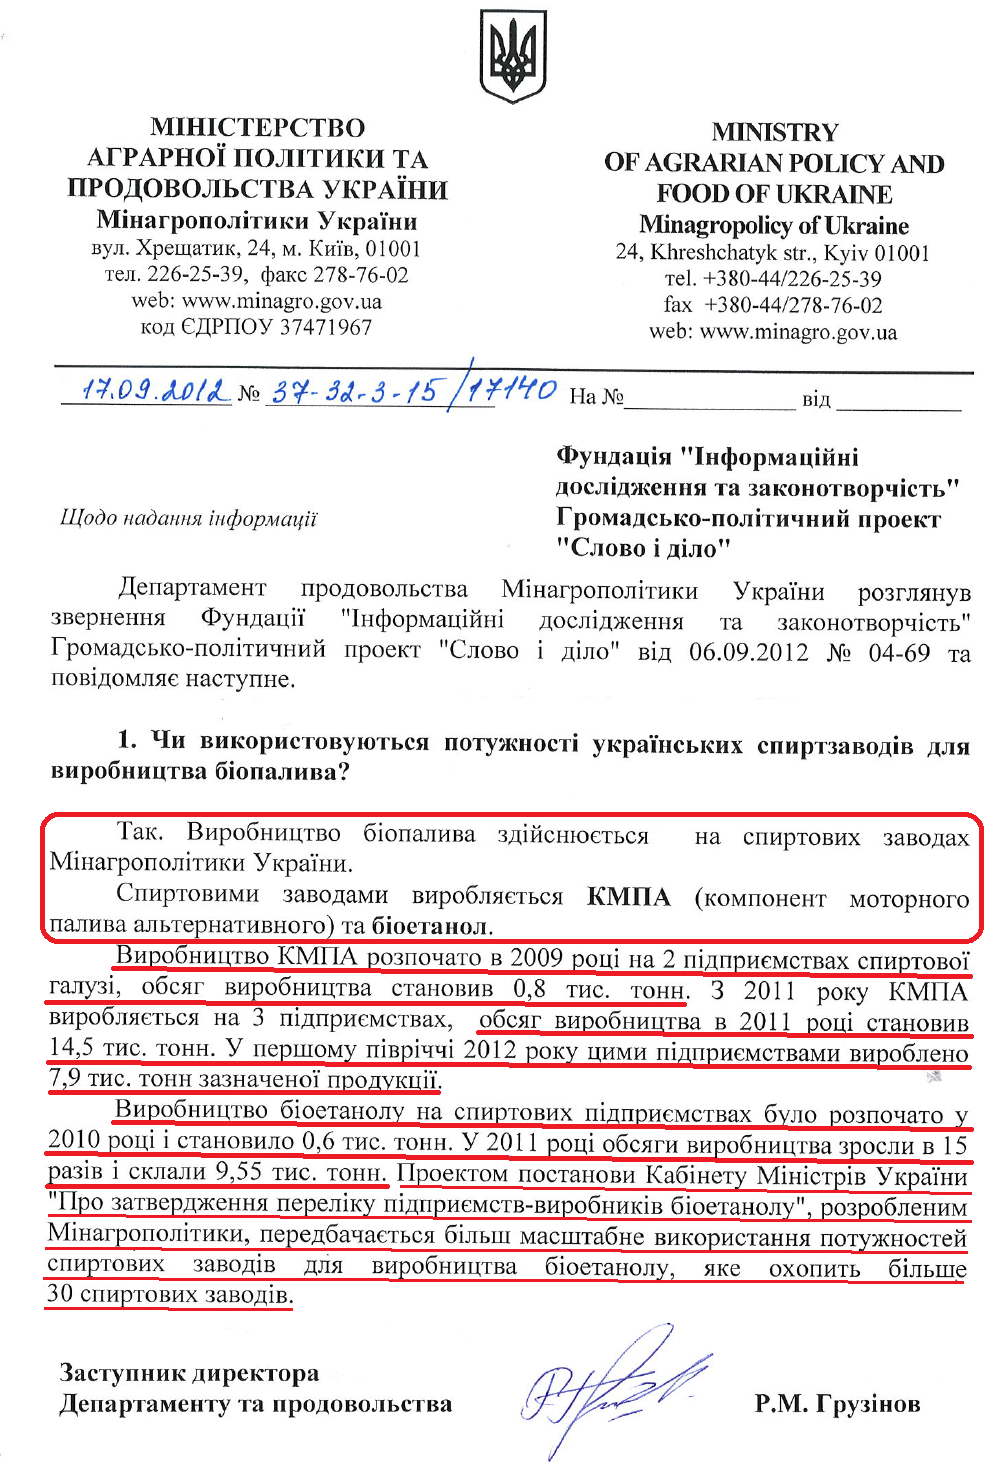 Лист Заступника директора Департаменту проводовольства Мінагропроду Р.М.Грузінова від 17 вересня 2012 року